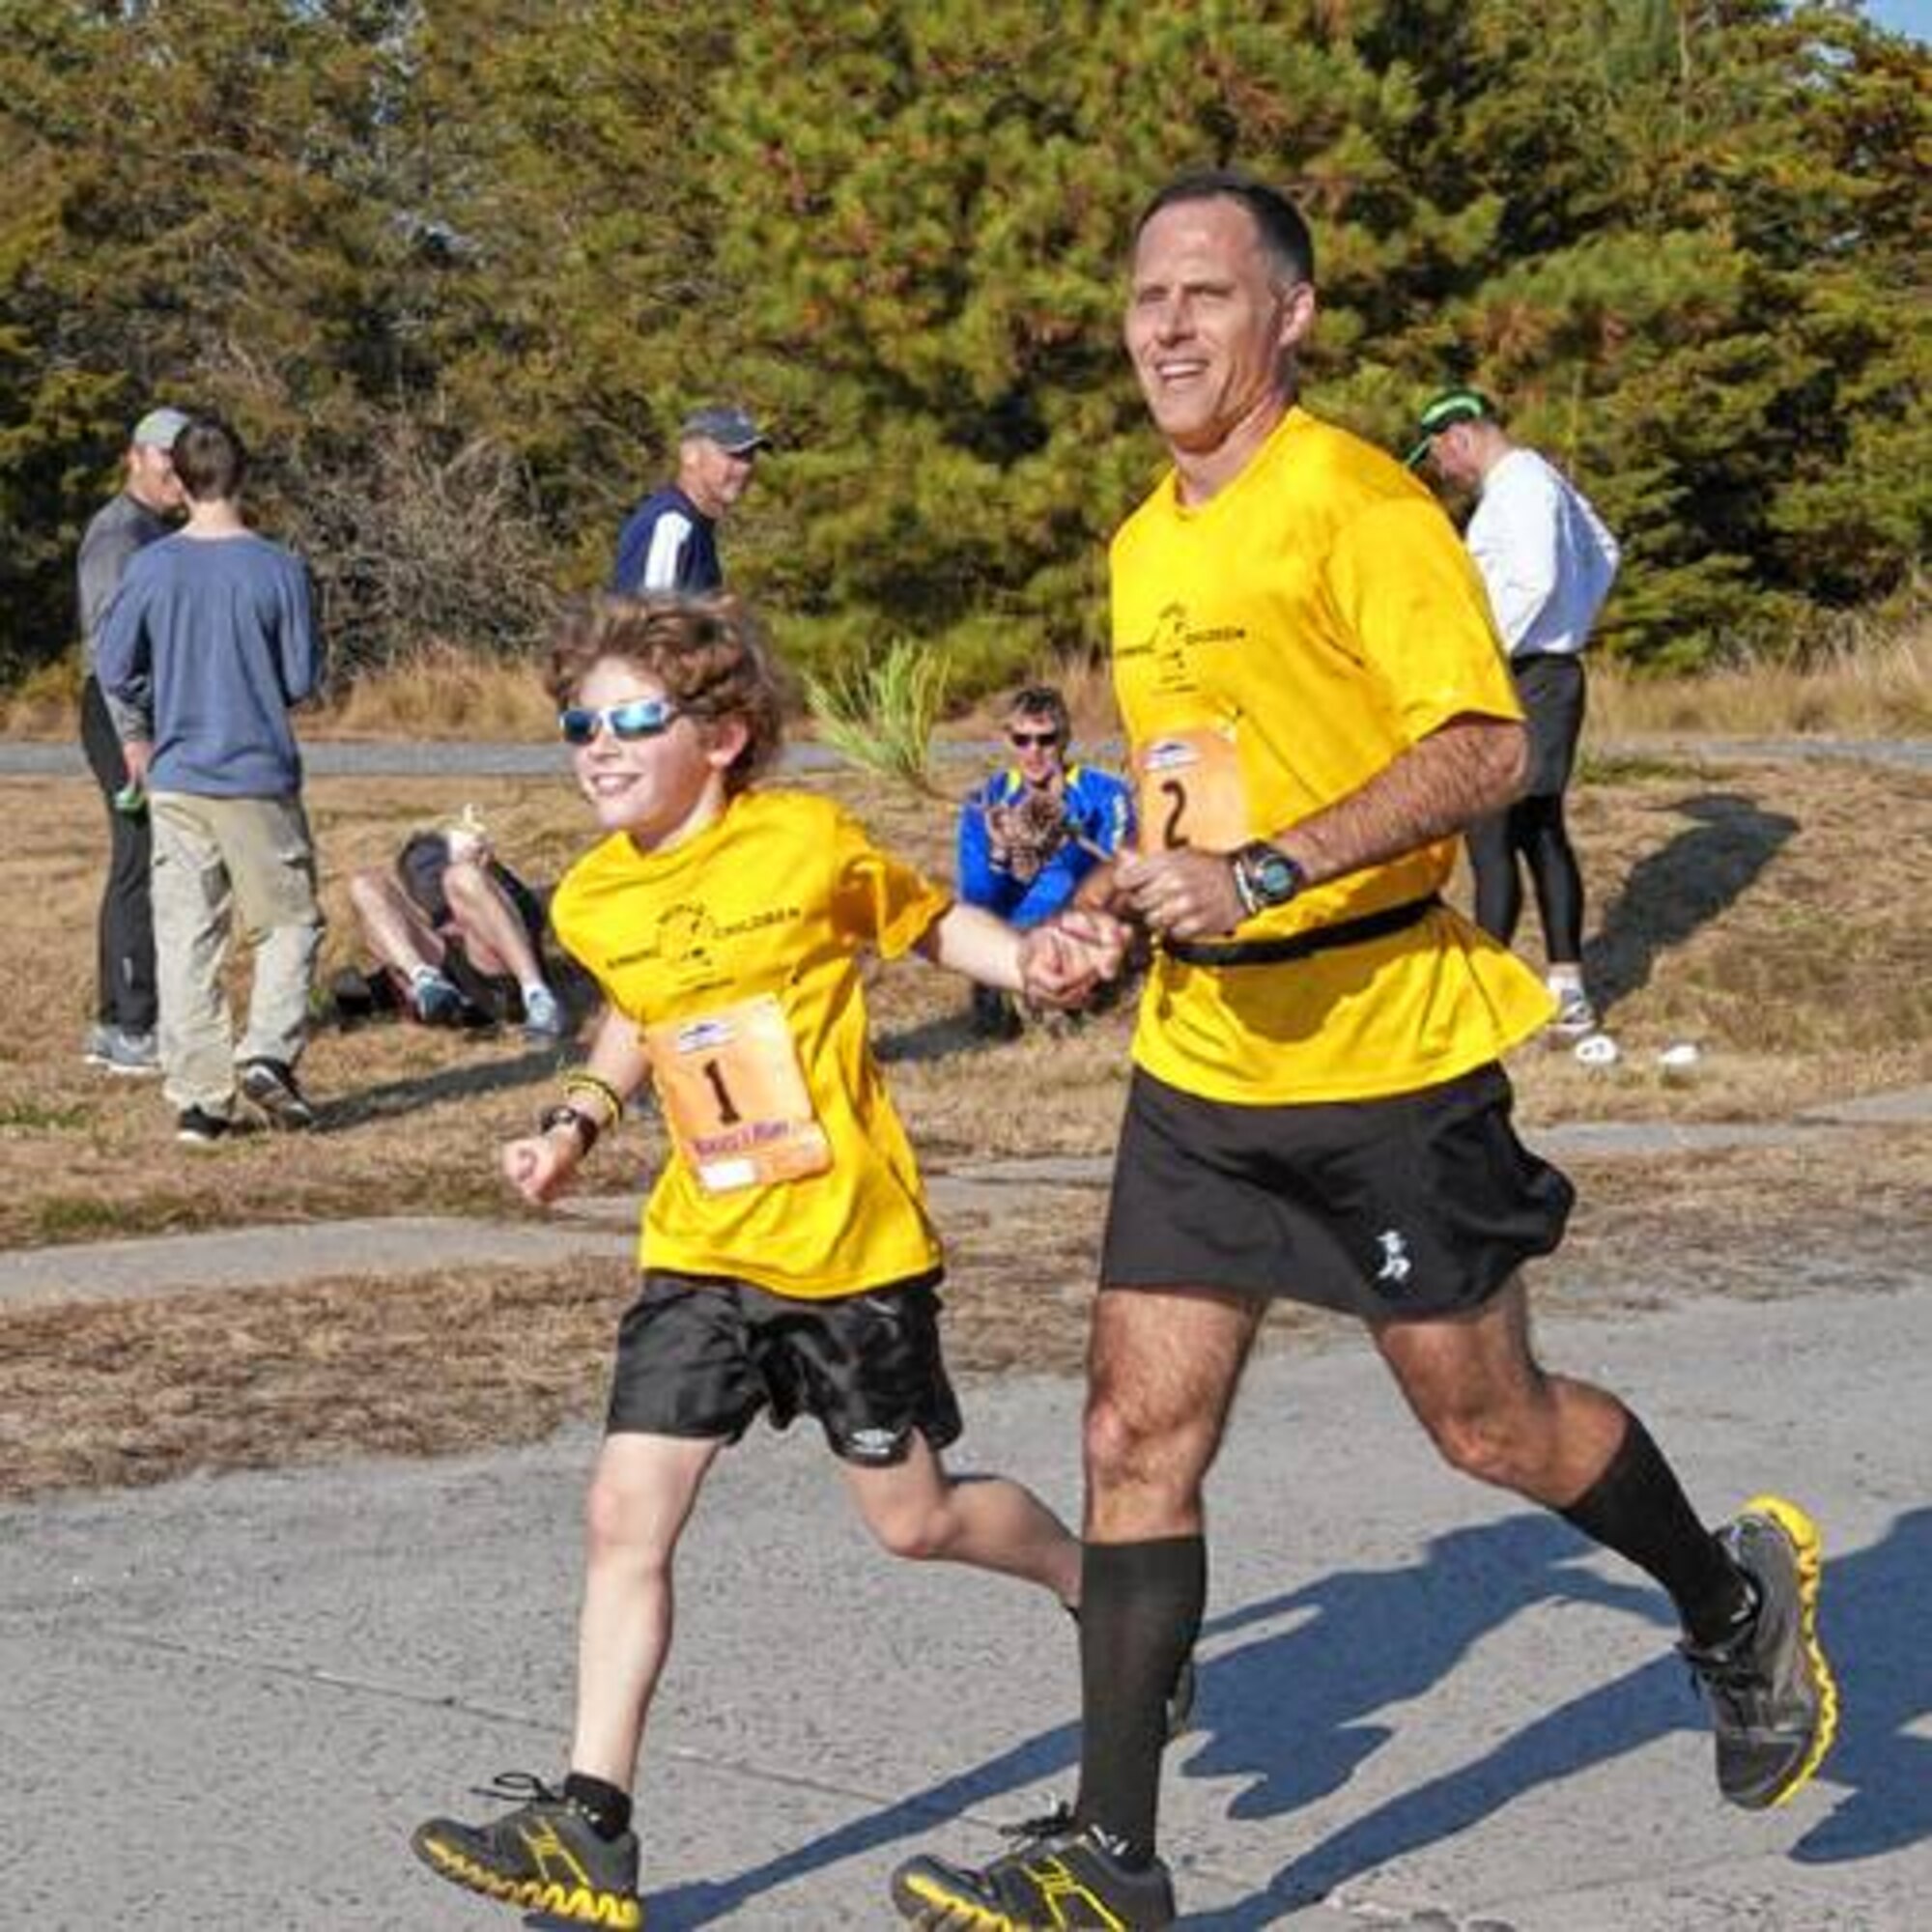 Lt. Col. (Dr.) Daniel Toocheck runs a marathon with his son, Nikolas.